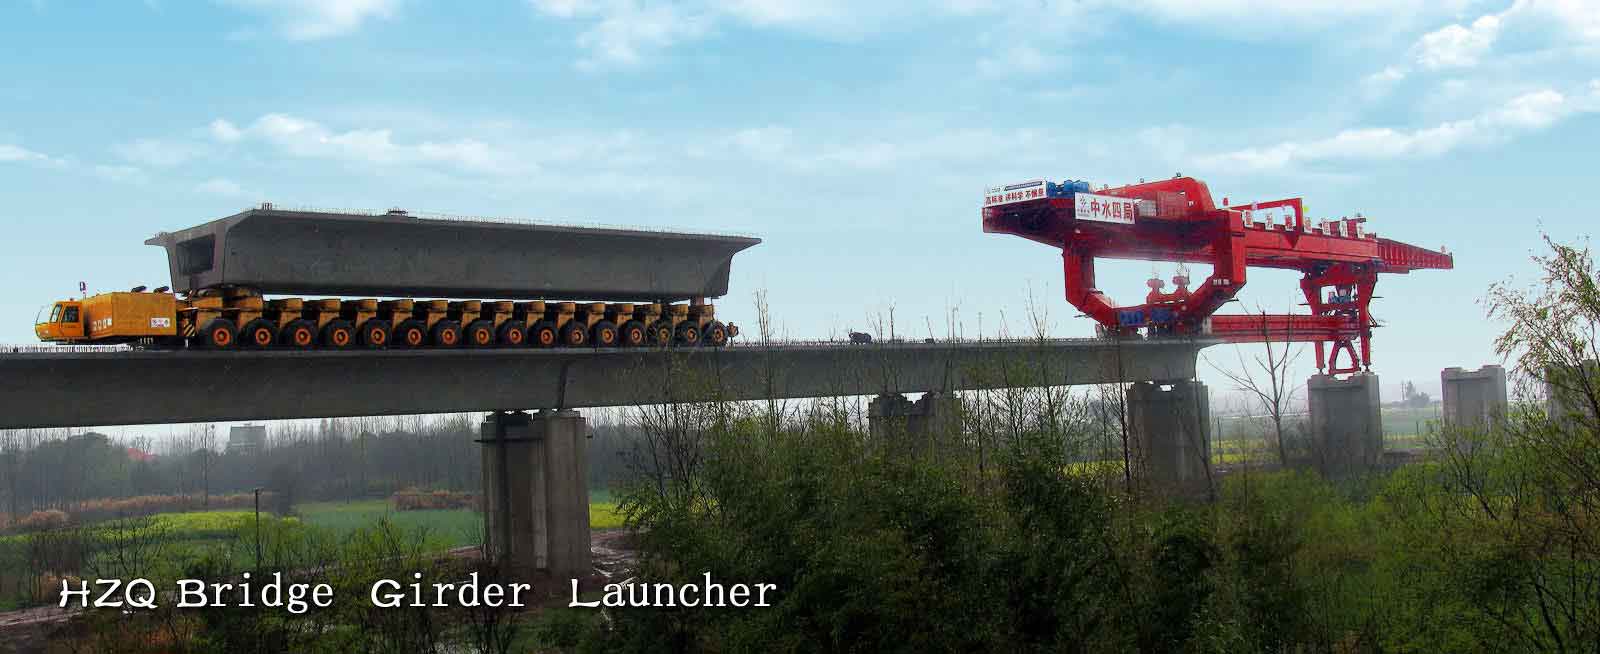 Bridge Girder Erection Machine for High Speed Railway